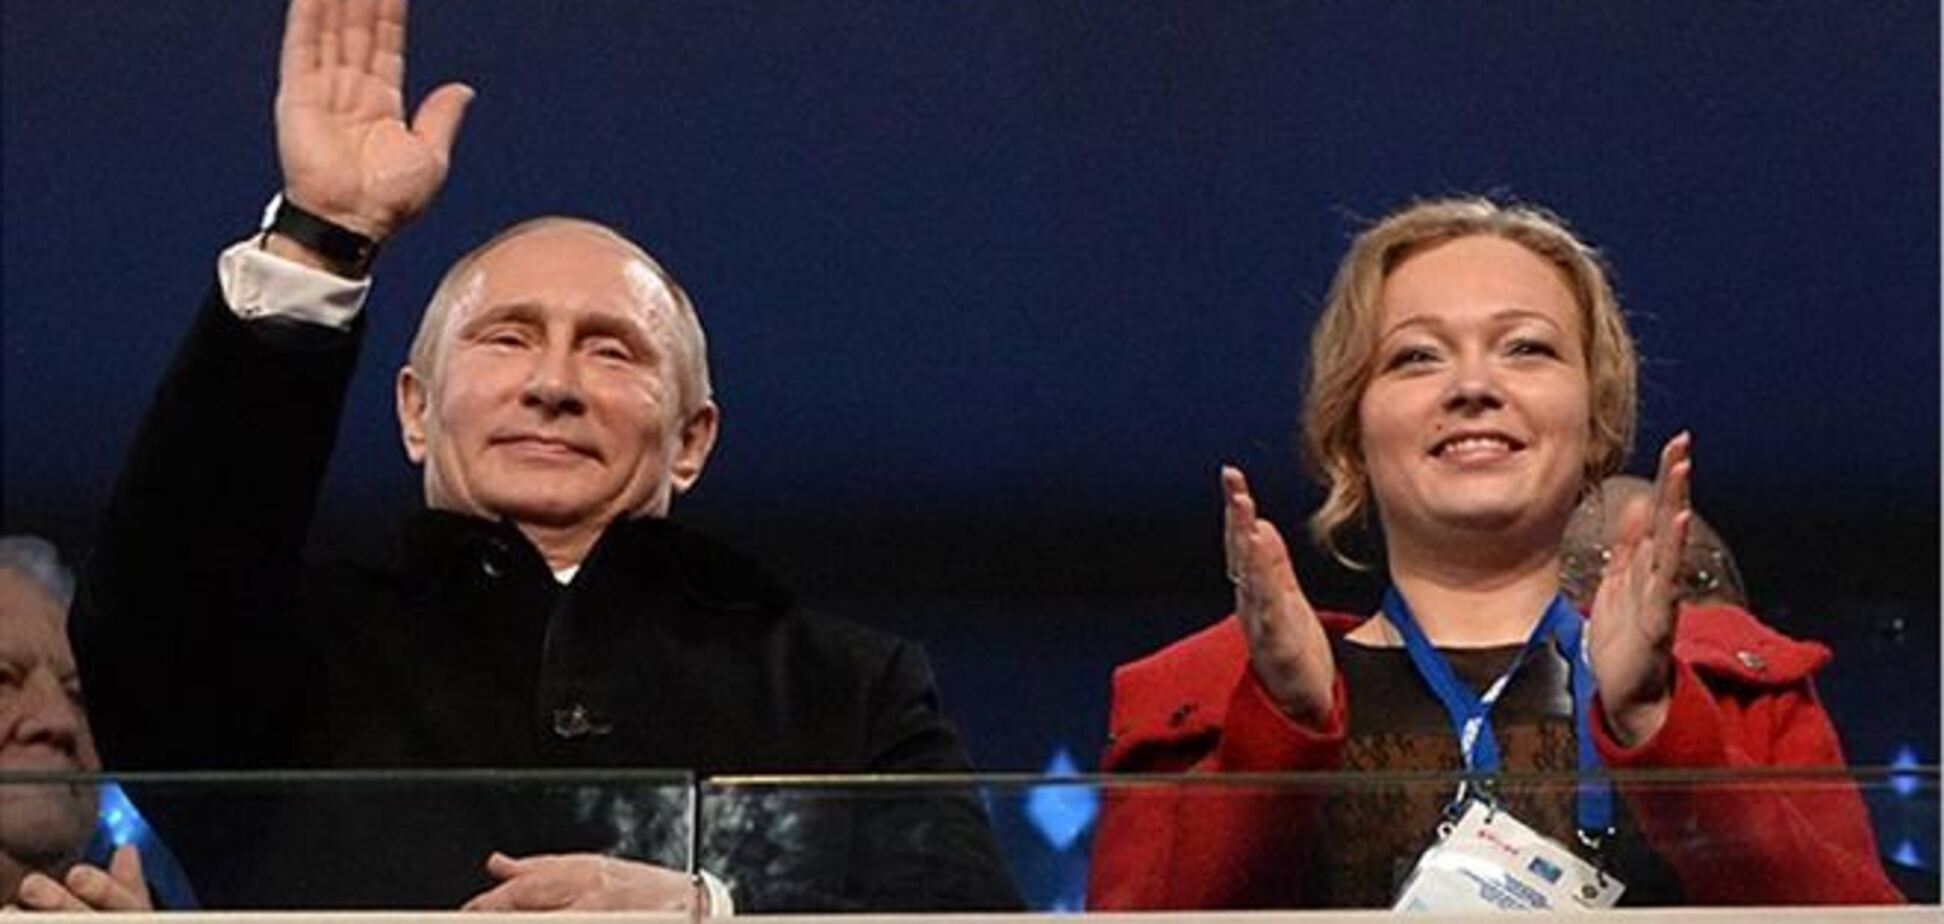 Раскрыта тайна загадочной спутницы Путина на Олимпиаде